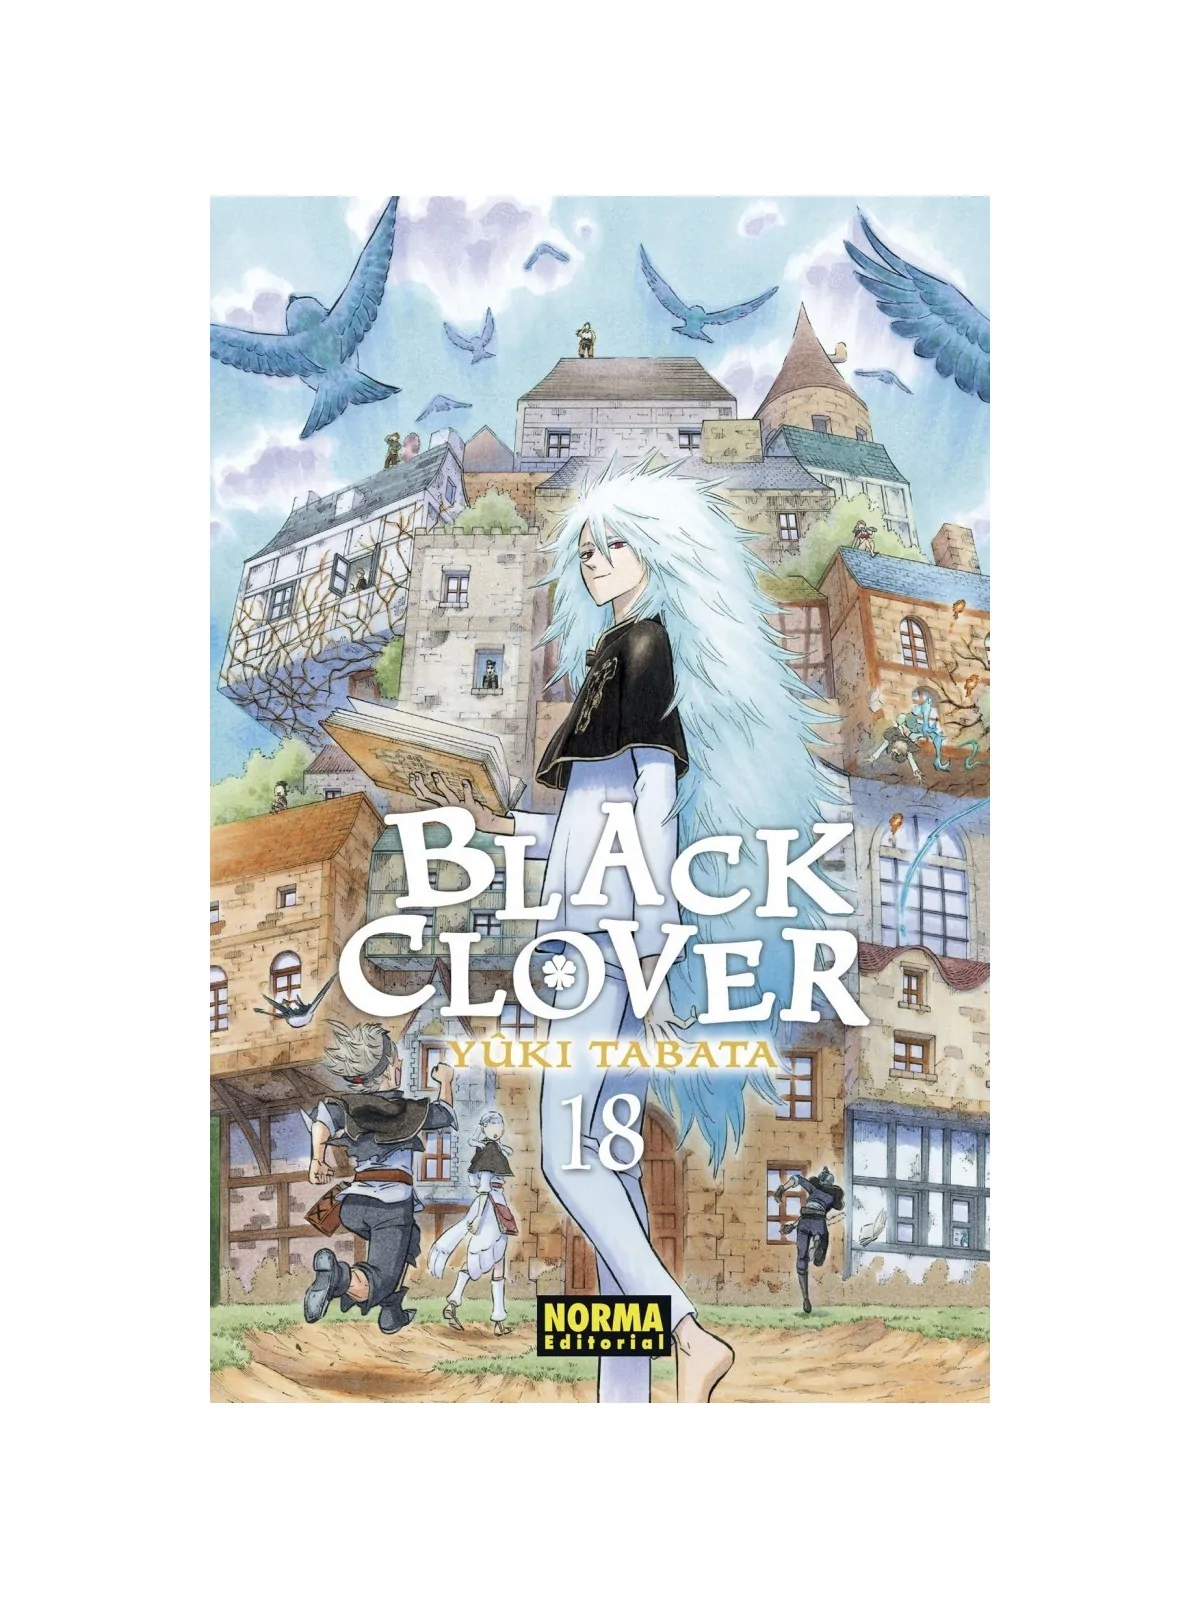 Comprar Black Clover 18 barato al mejor precio 8,55 € de Norma Editori